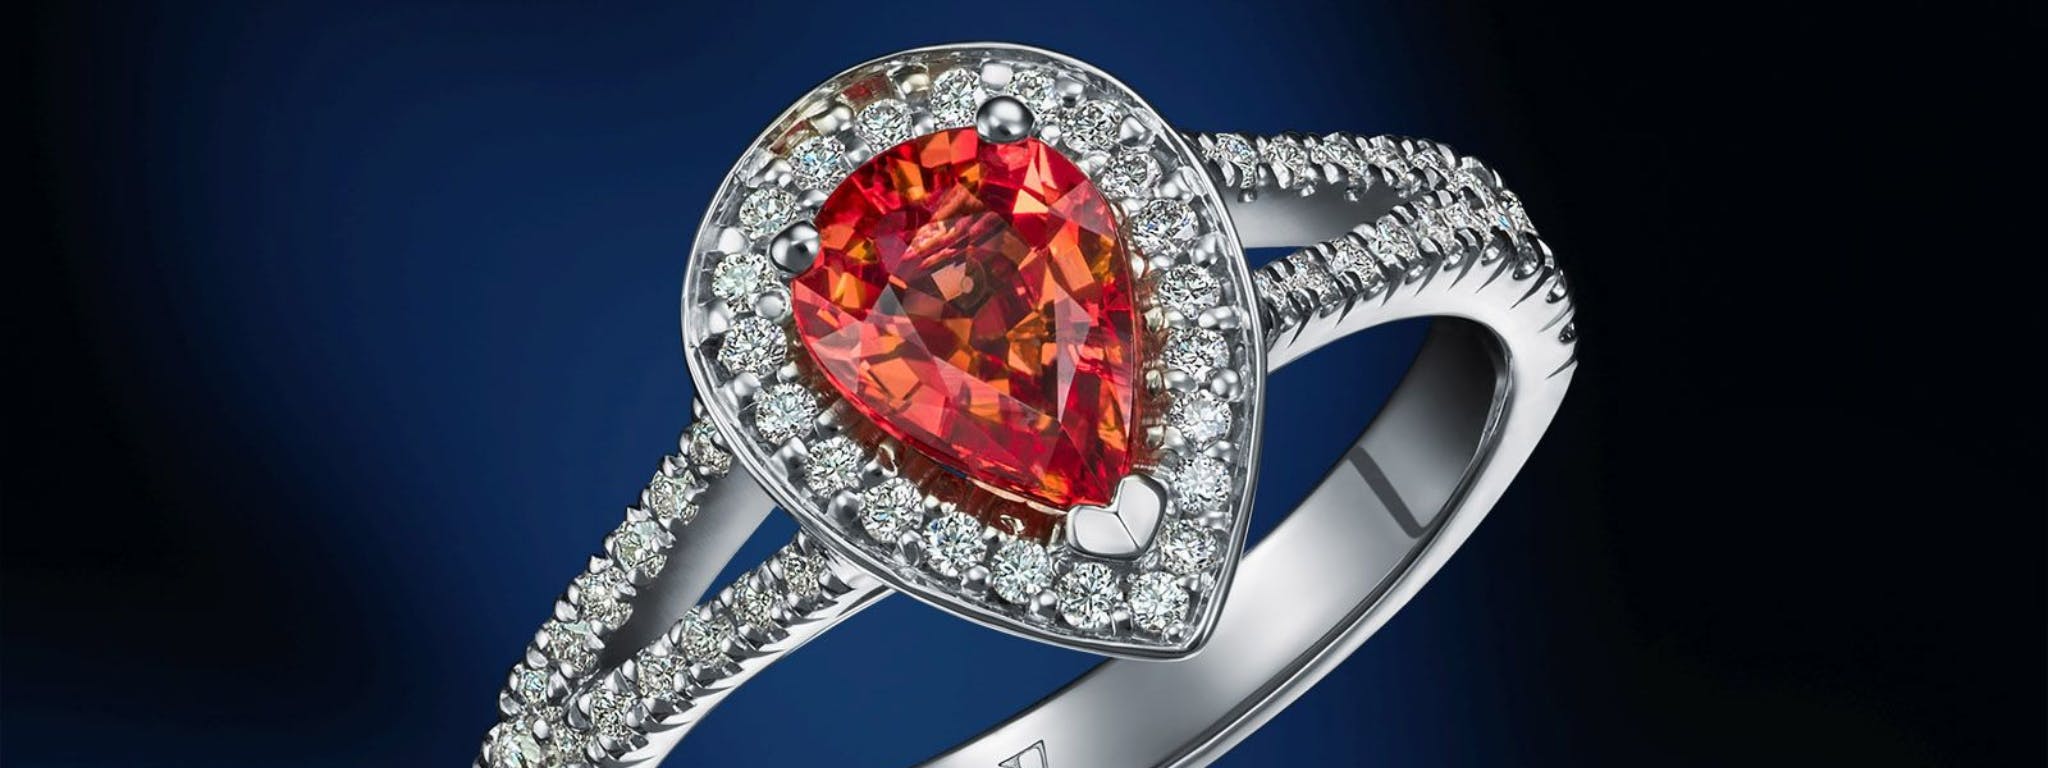 Egzotyczne kamienie to podstawa gdy powstaje pierścionek zaręczynowy na zamówienie.